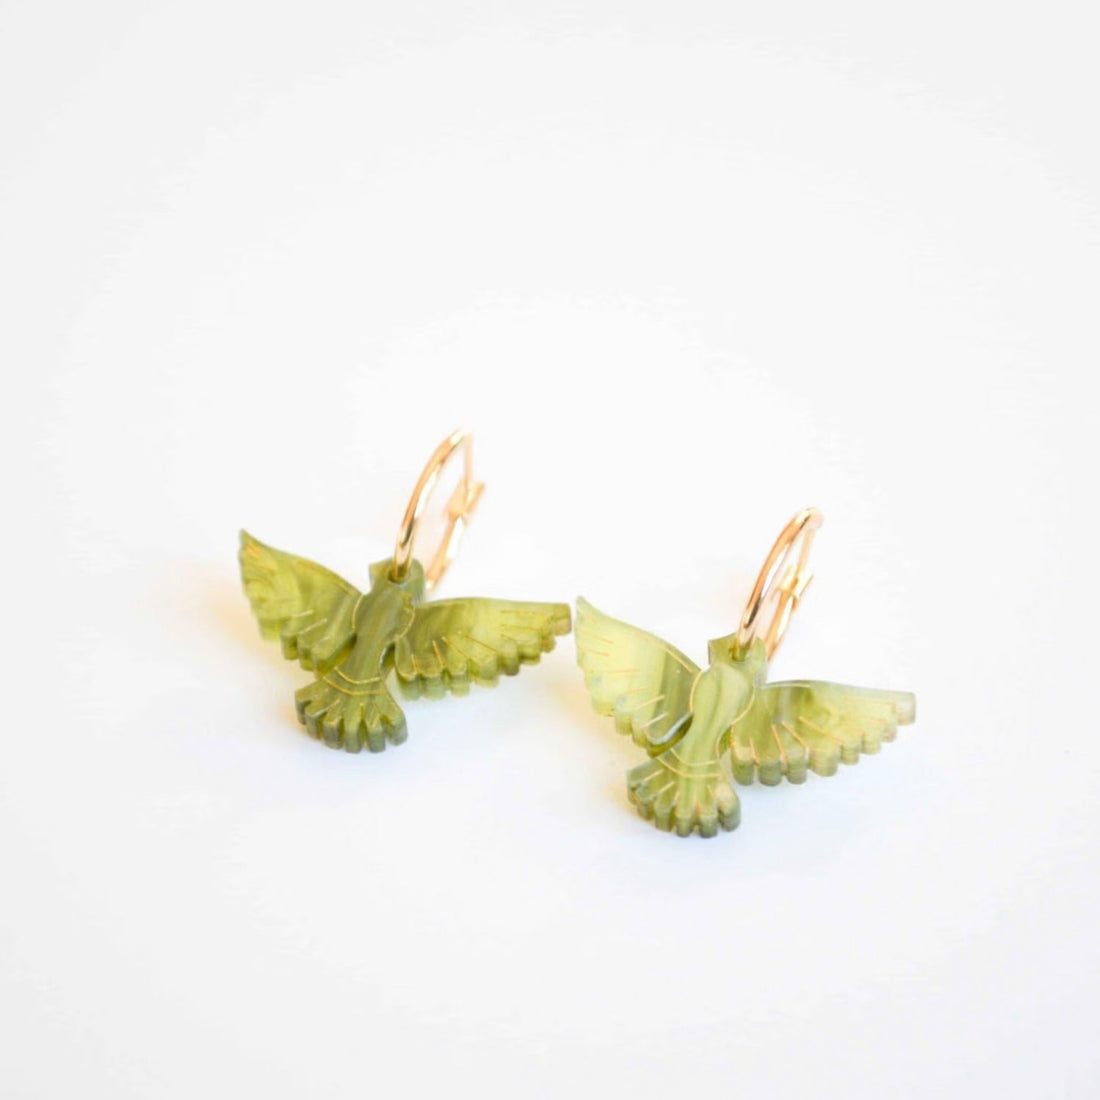 Hagen + Co - Lovebird Earrings, Sage - The Flower Crate